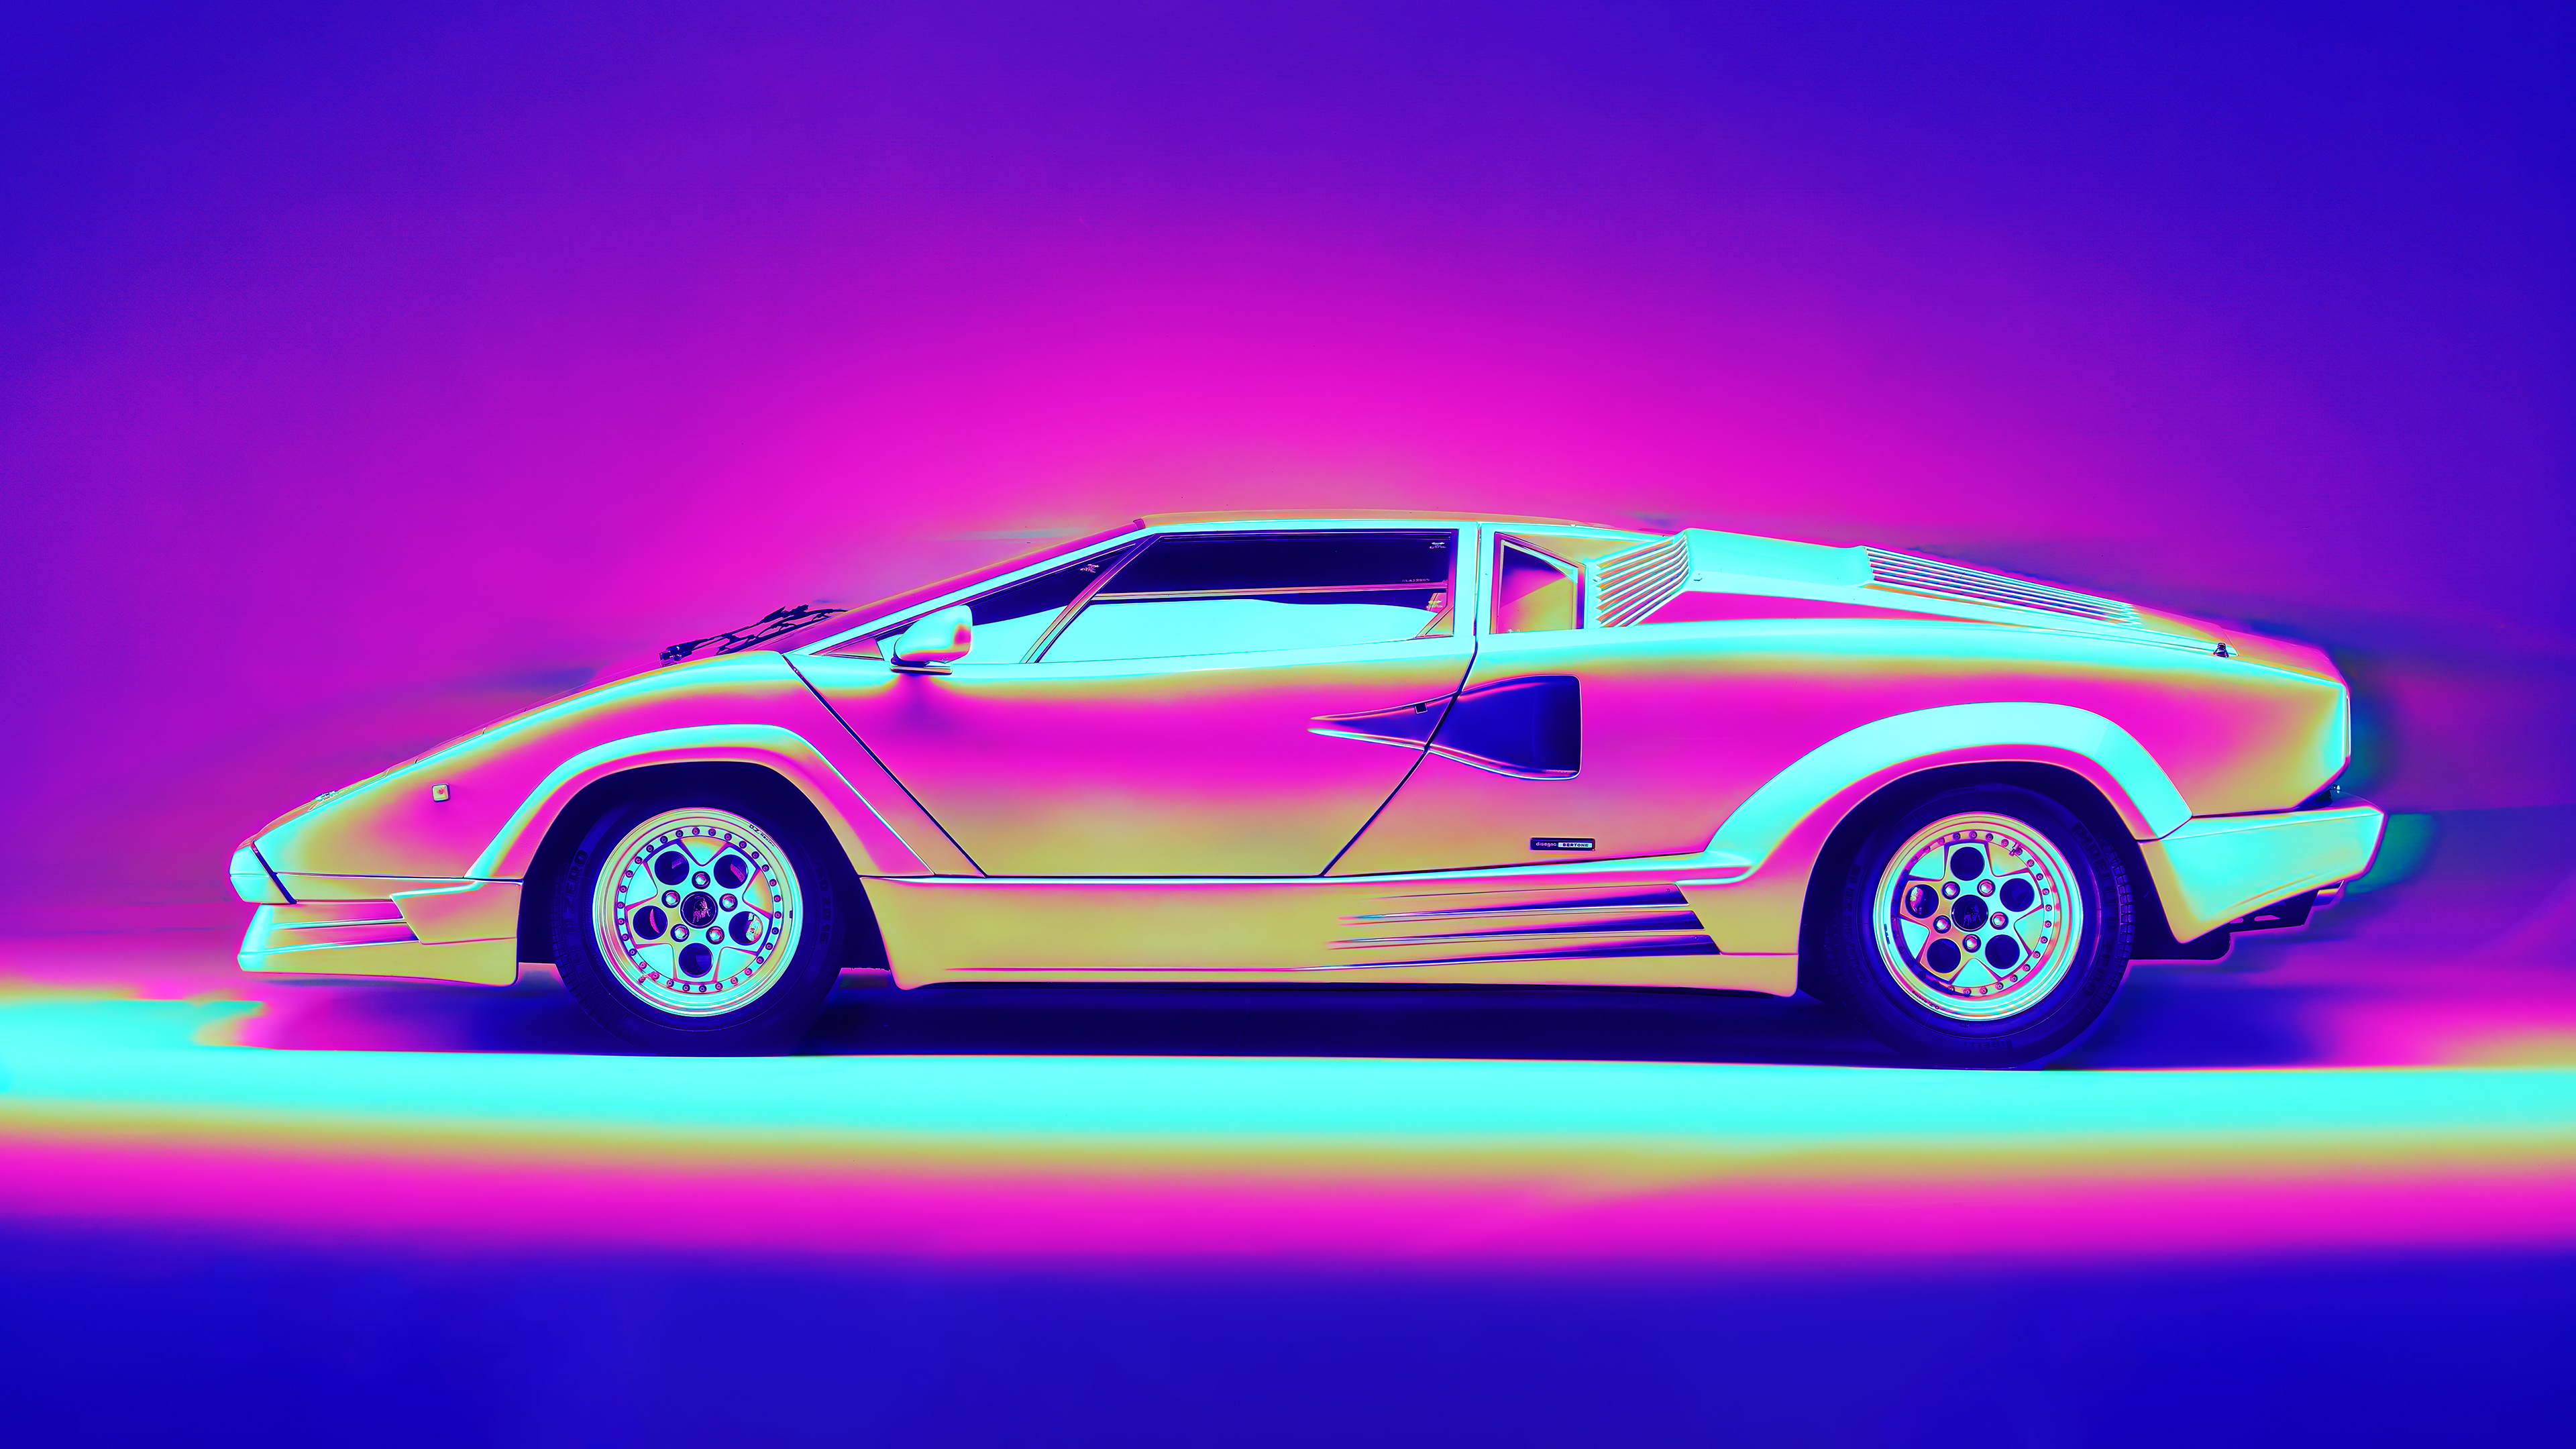 Lamborghini Countach Retro Artwork - Lamborghini Countach 25 Anniversario , HD Wallpaper & Backgrounds